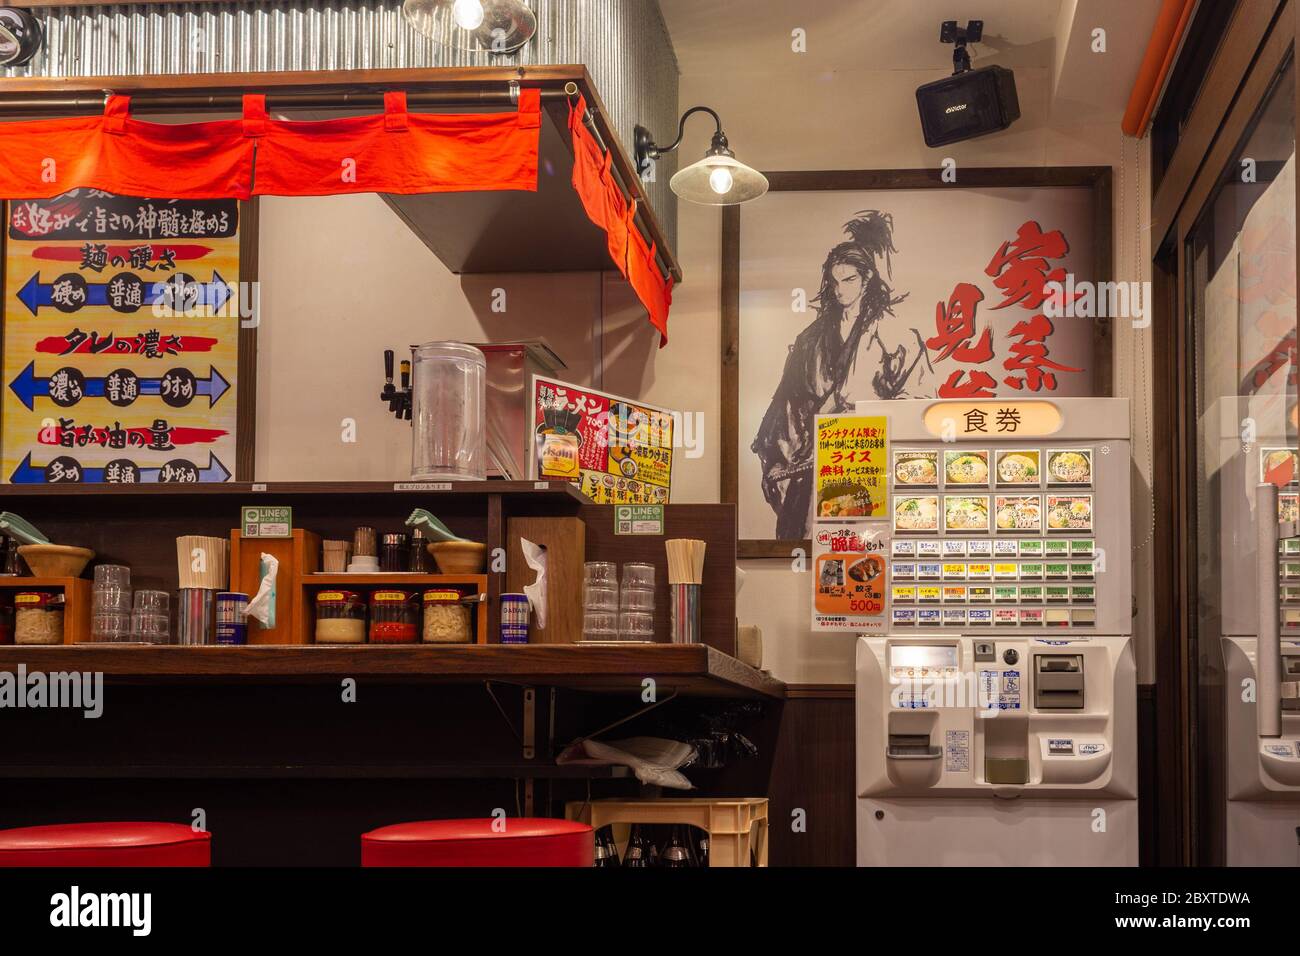 Tokio / Japan - 21. Oktober 2017: Ramen-Restaurant mit Ramen-Automaten in Tokio, Japan Stockfoto